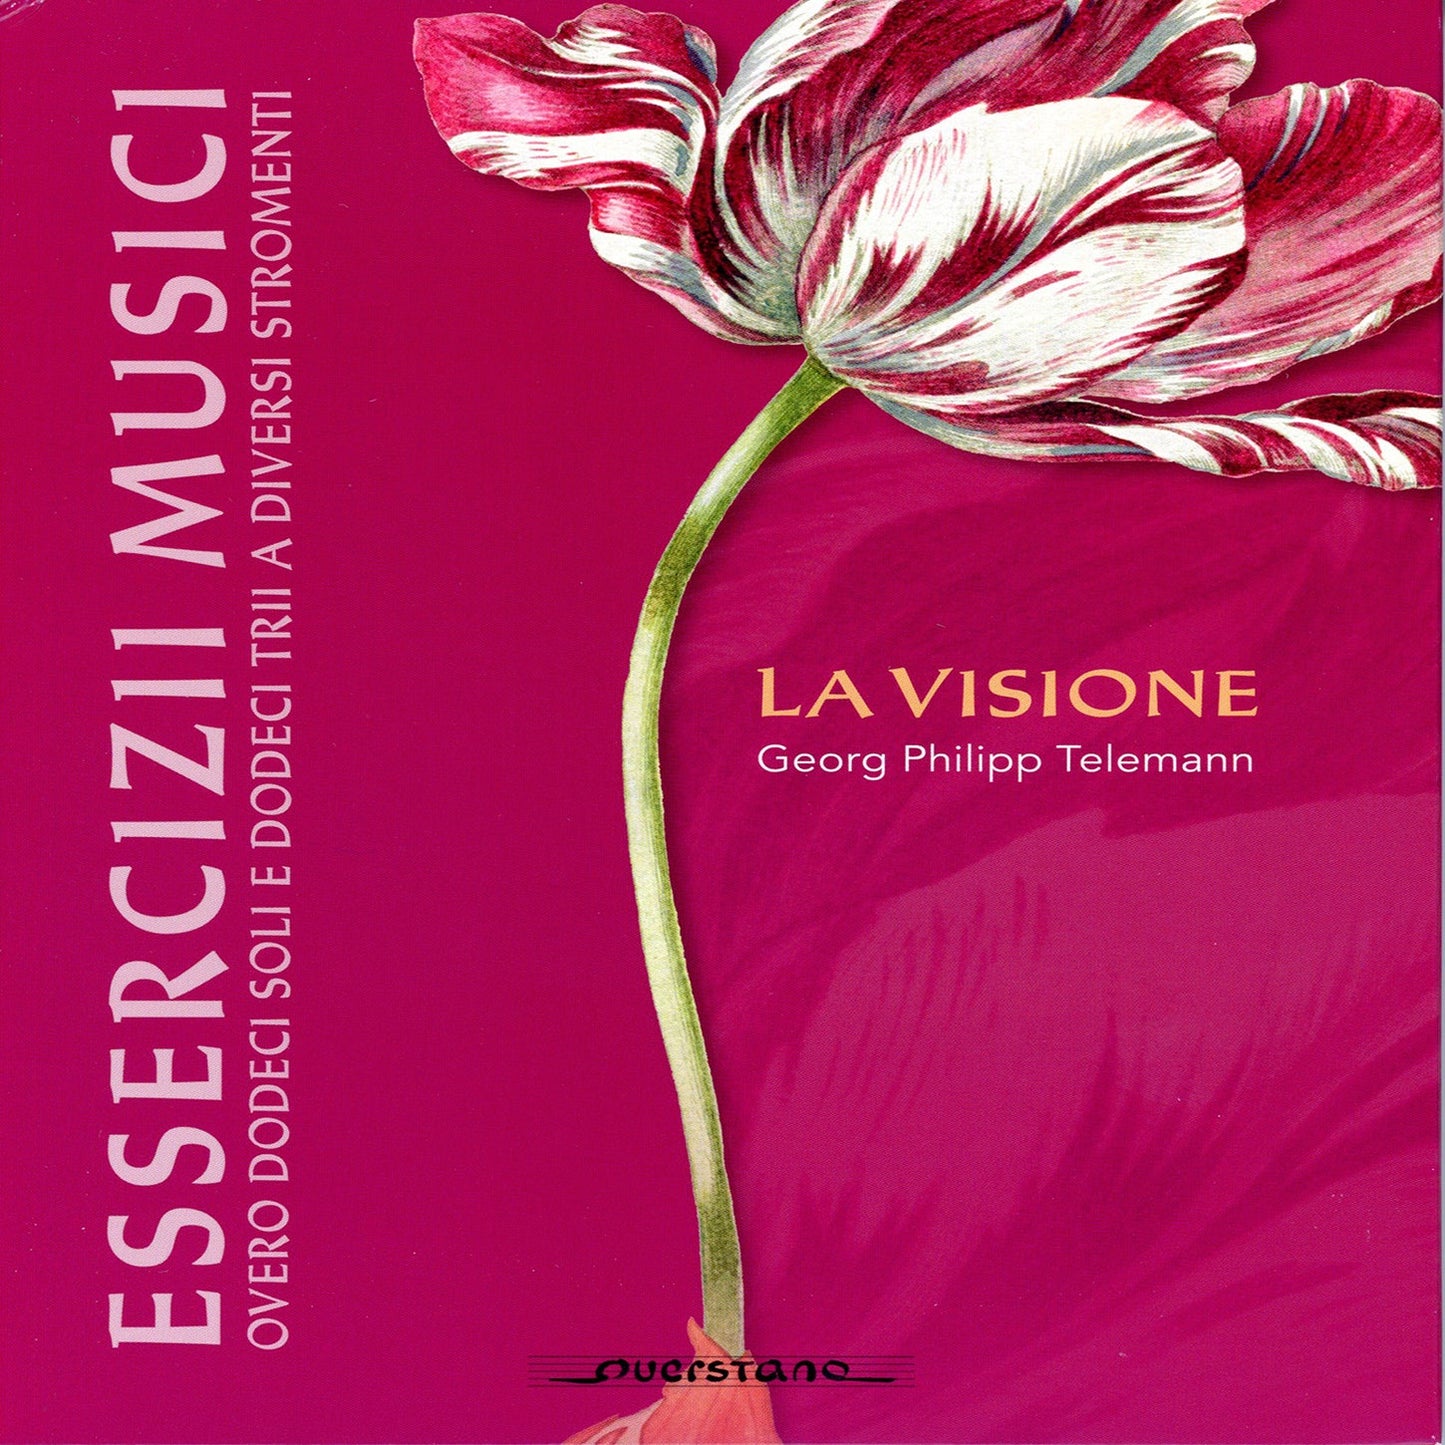 Telemann: Essercizii Musici / La Visione [4 CDs]